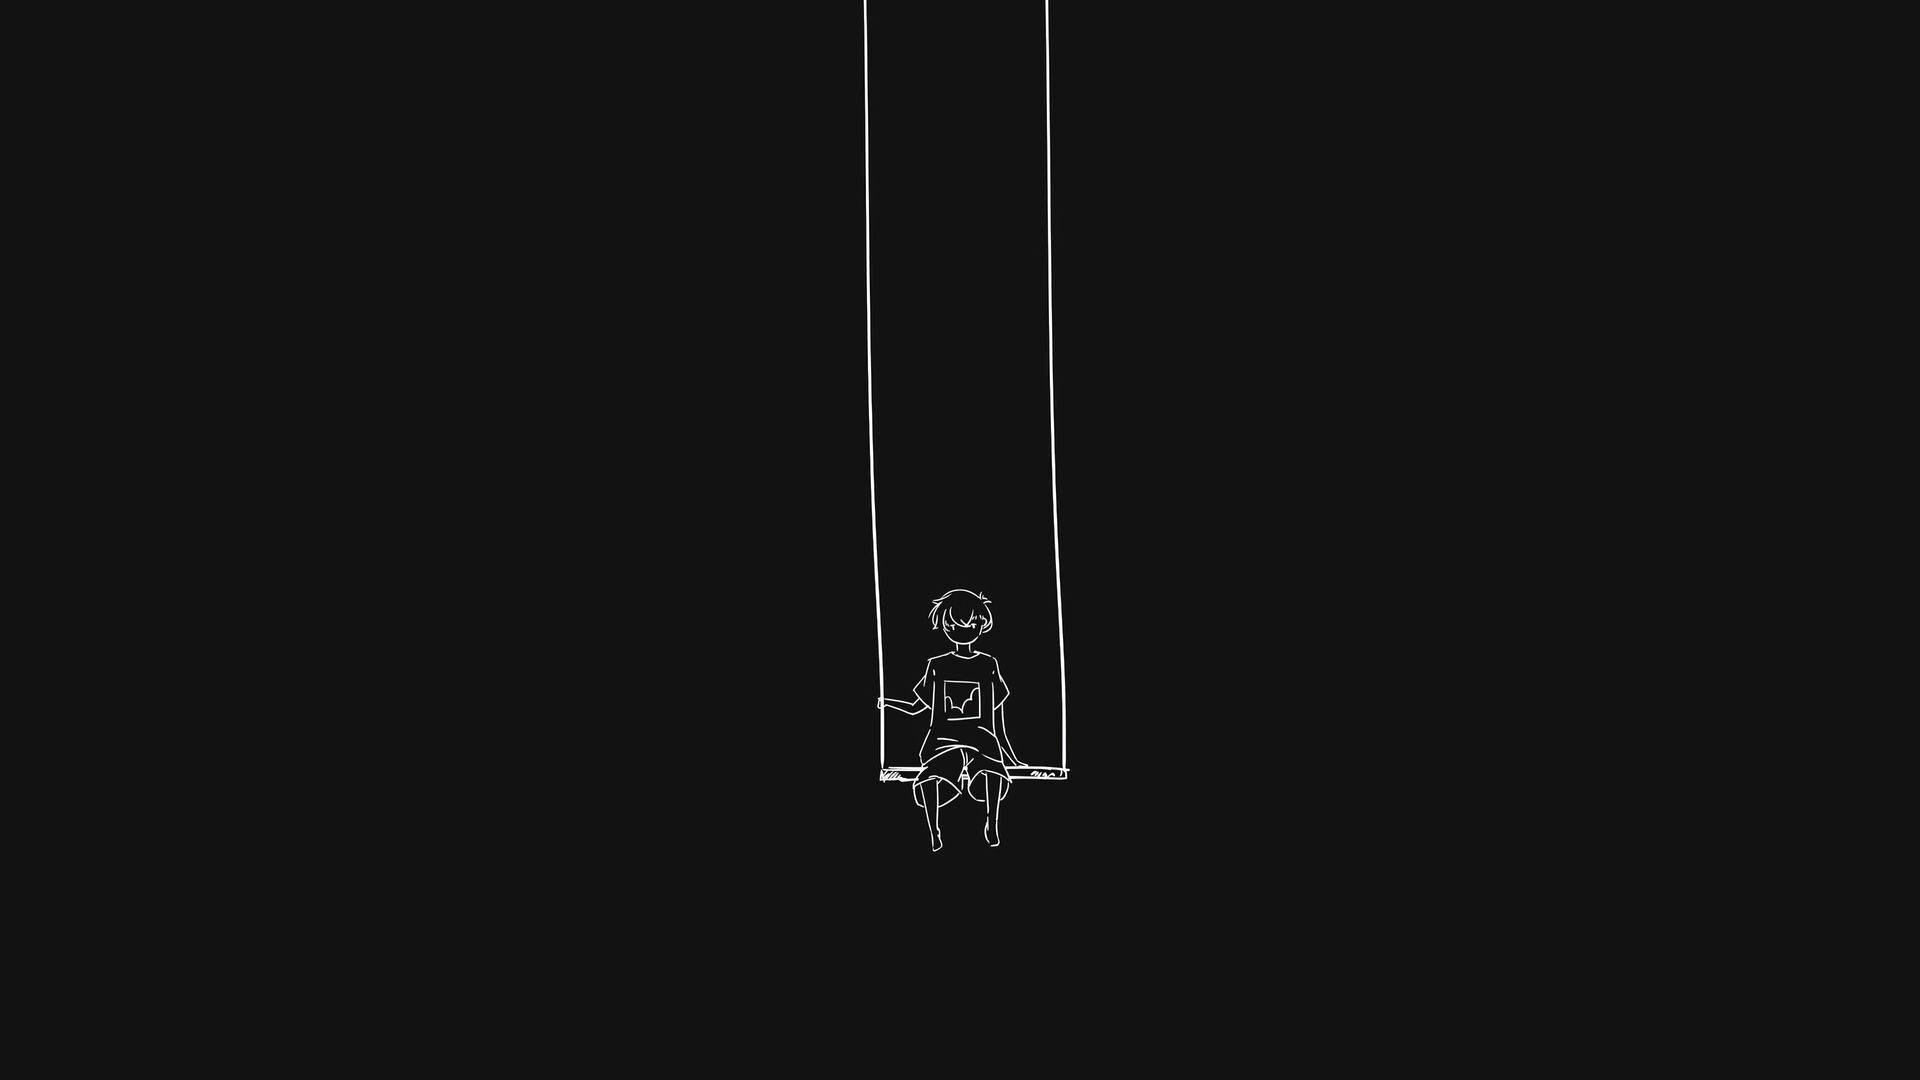 Dark Theme Minimalist Boy In Swing Background